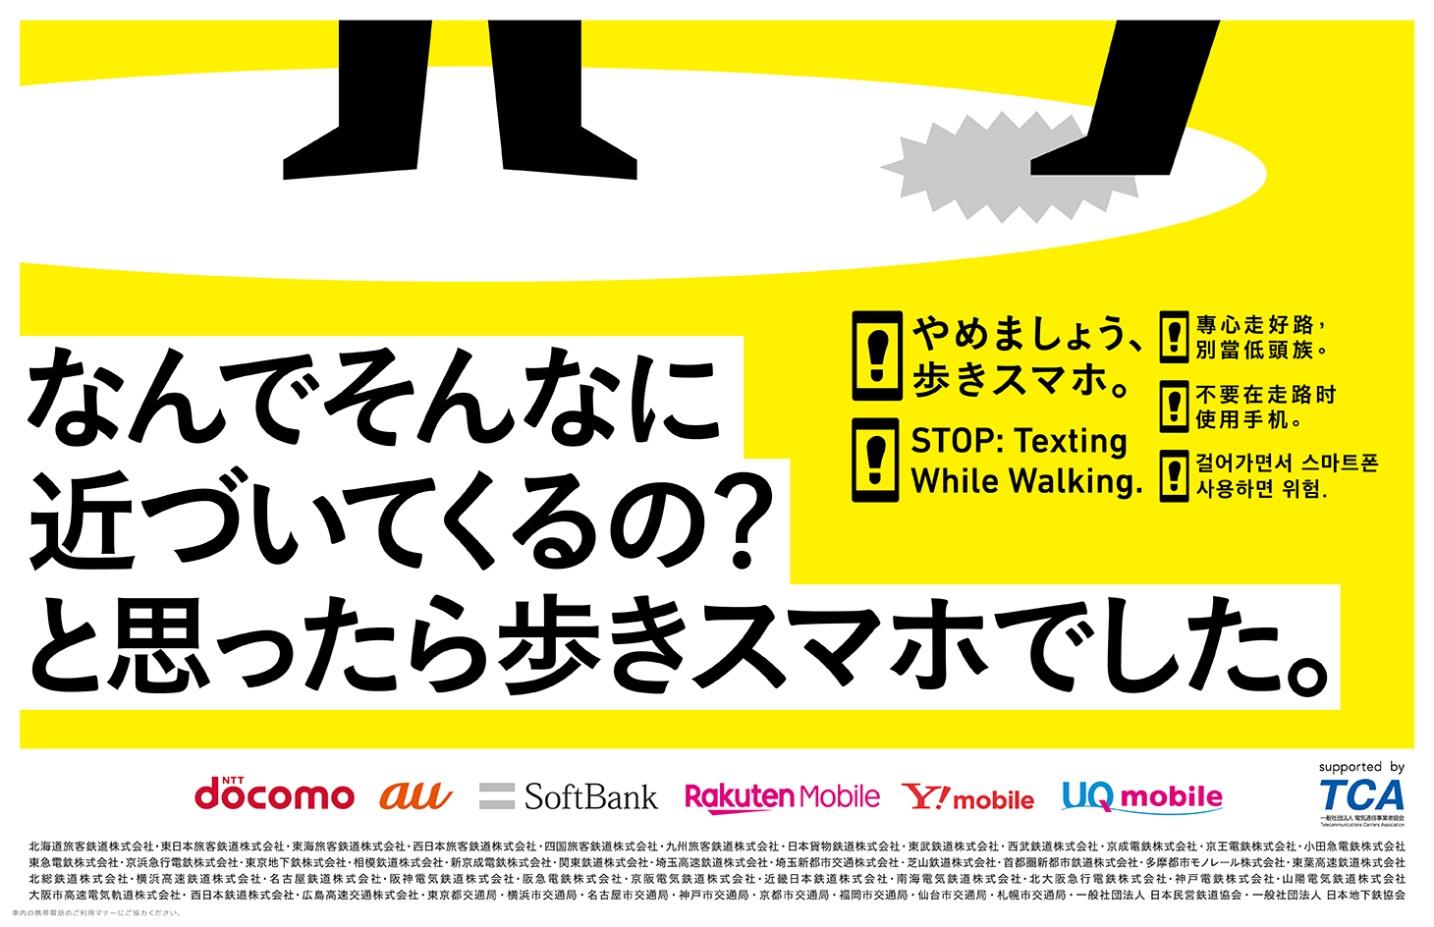 やめましょう 歩きスマホ キャンペーンを実施 10 1 10 31 新京成電鉄株式会社